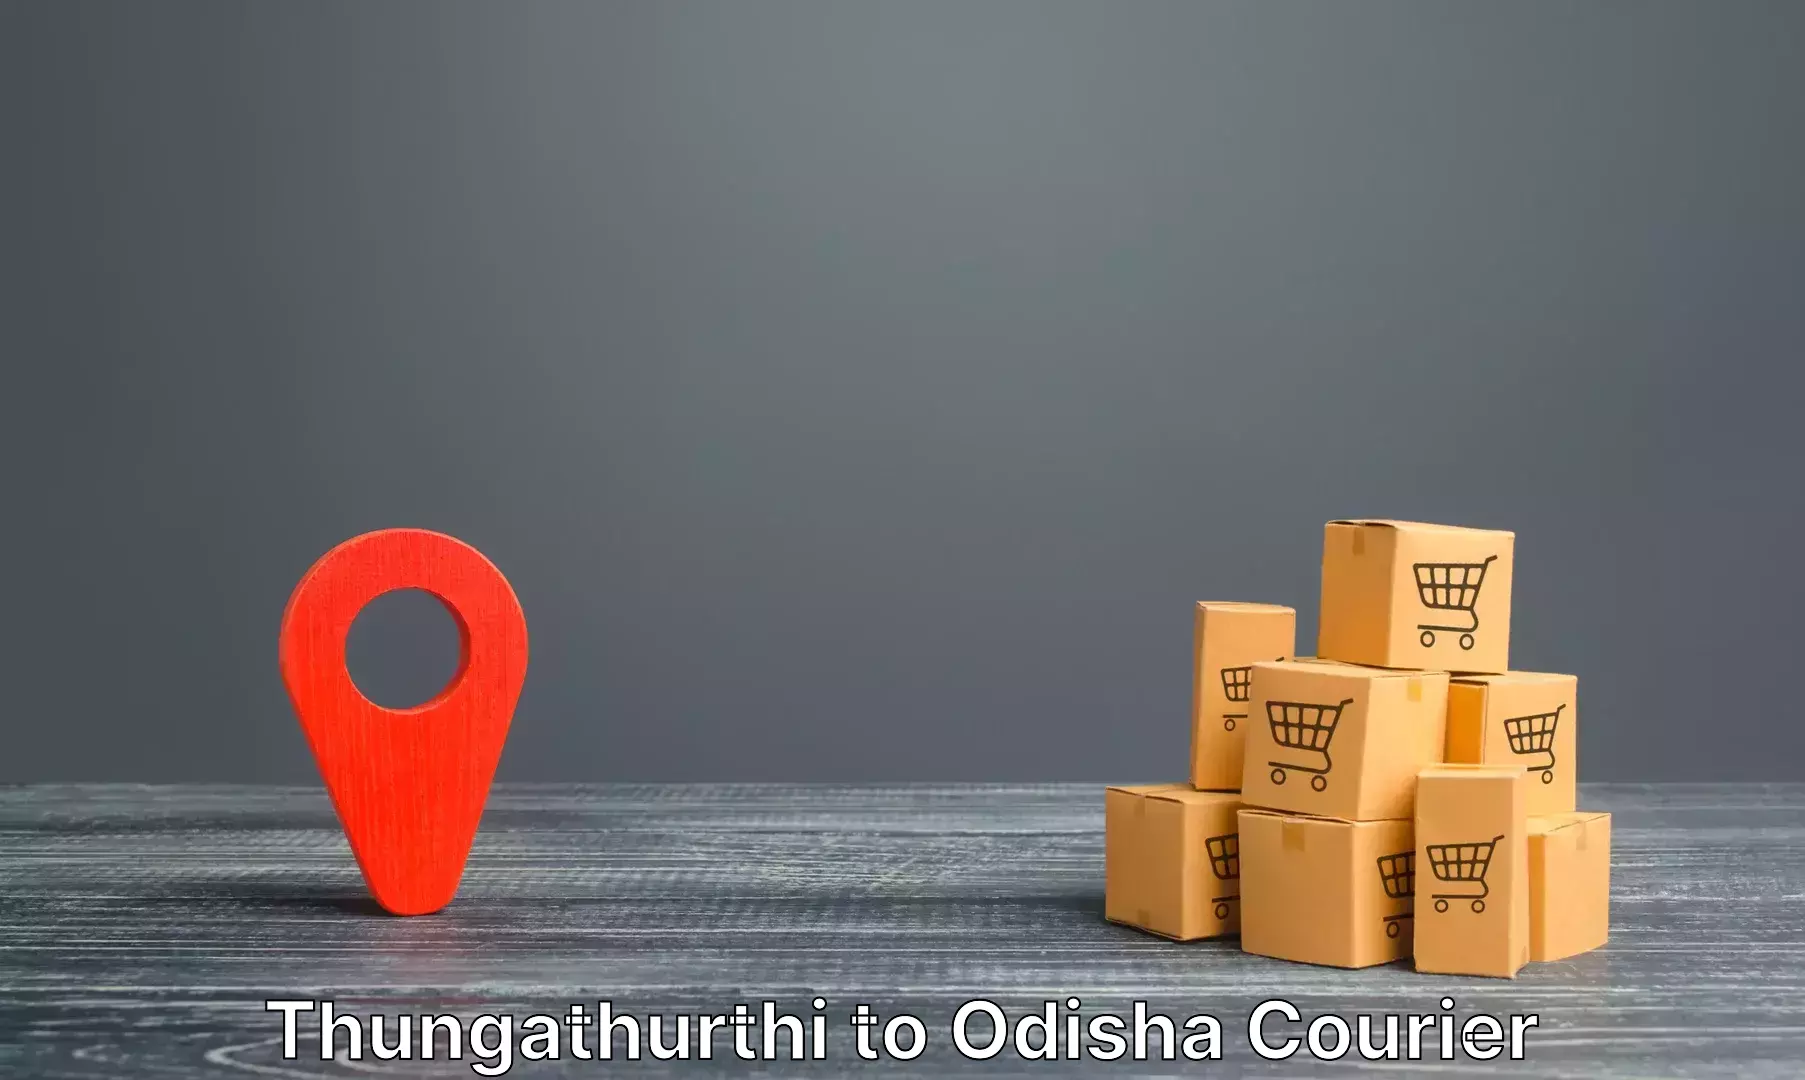 Luggage delivery system Thungathurthi to Jaipatna